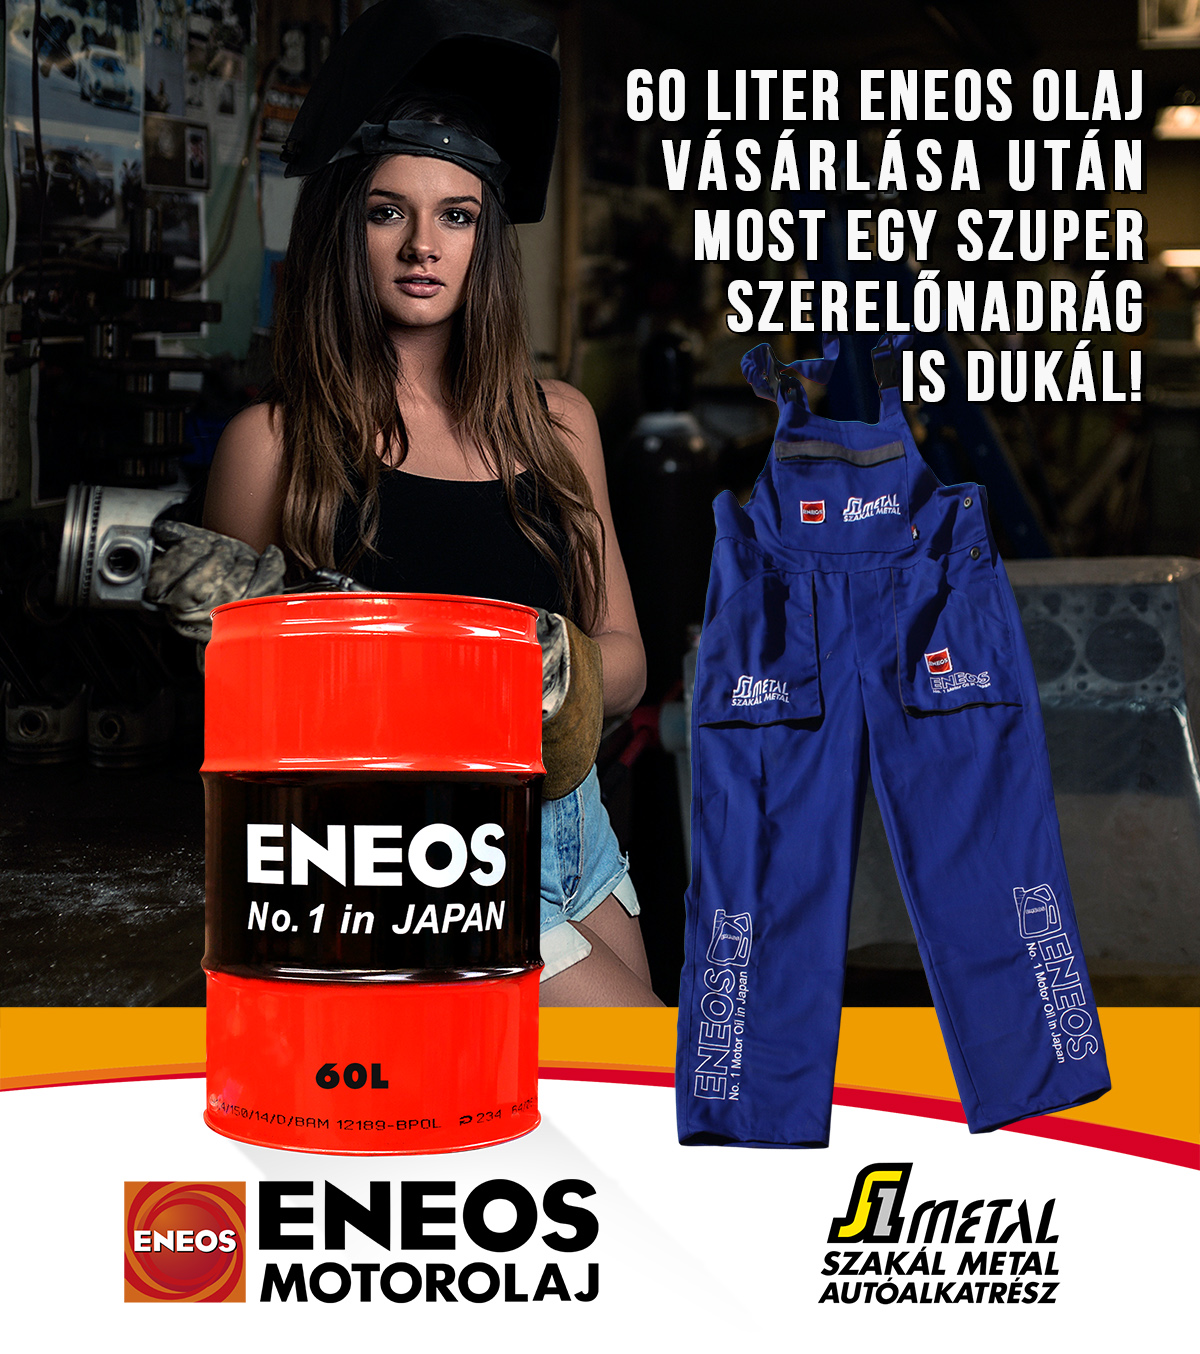 ENEOS olaj vásárlásért szerelőnadrág 